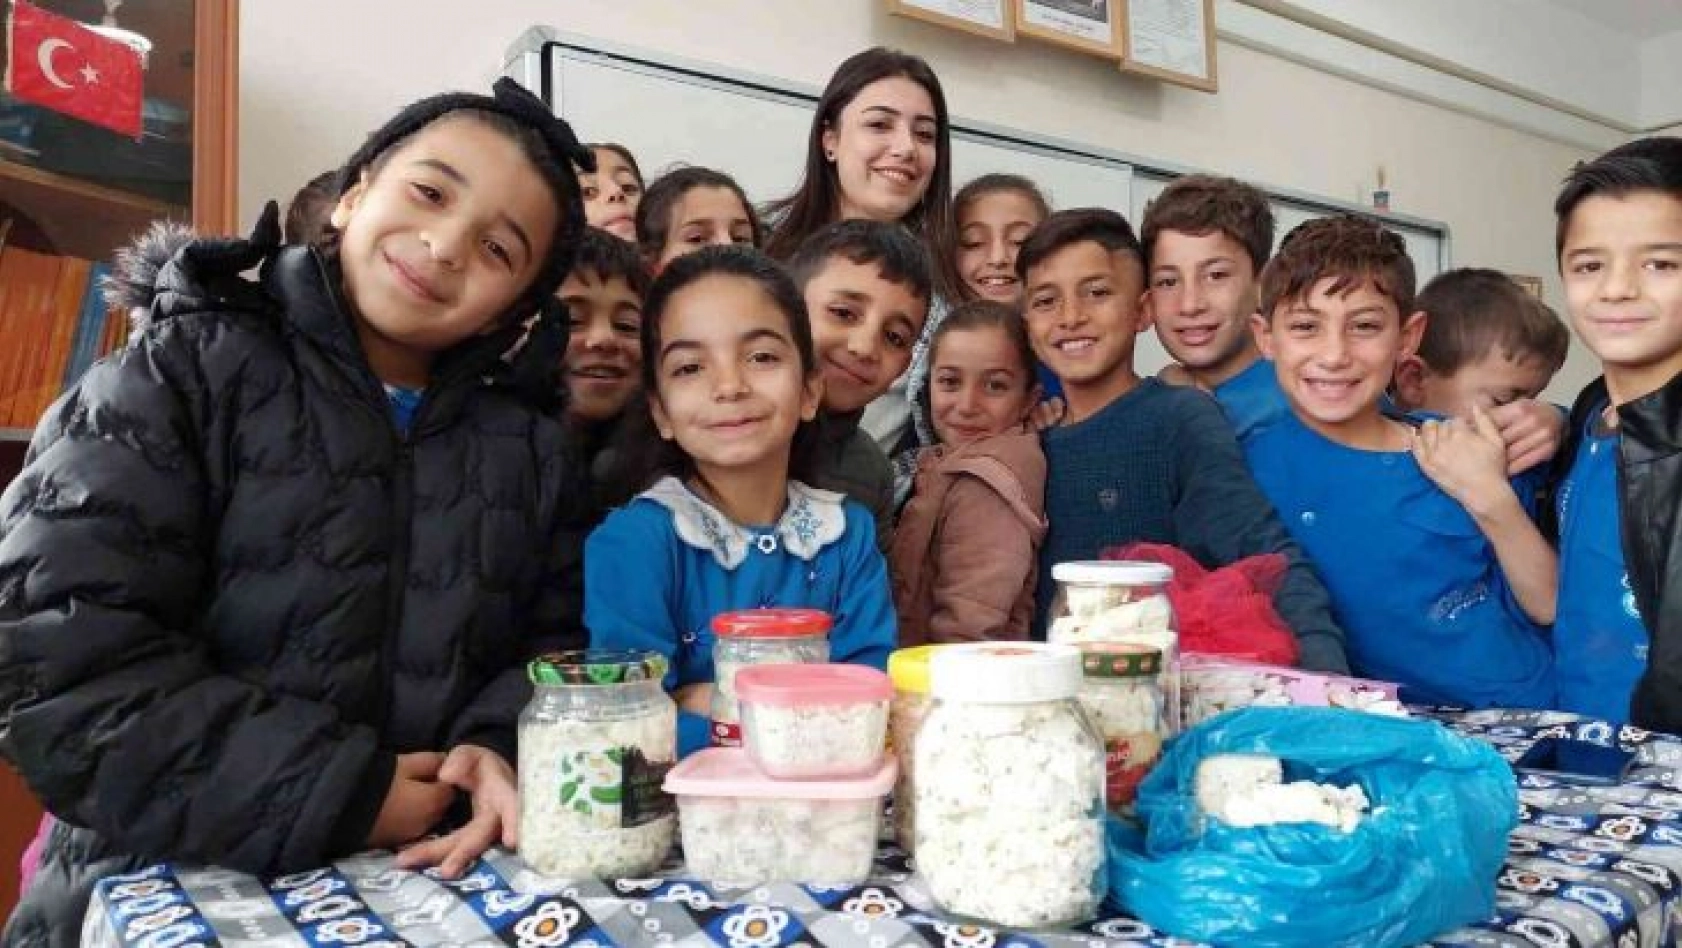 Siirtli çocuklardan öğretmenlerine yöresel peynirle kutlama: Hem gülümsetti, hem duygulandırdı